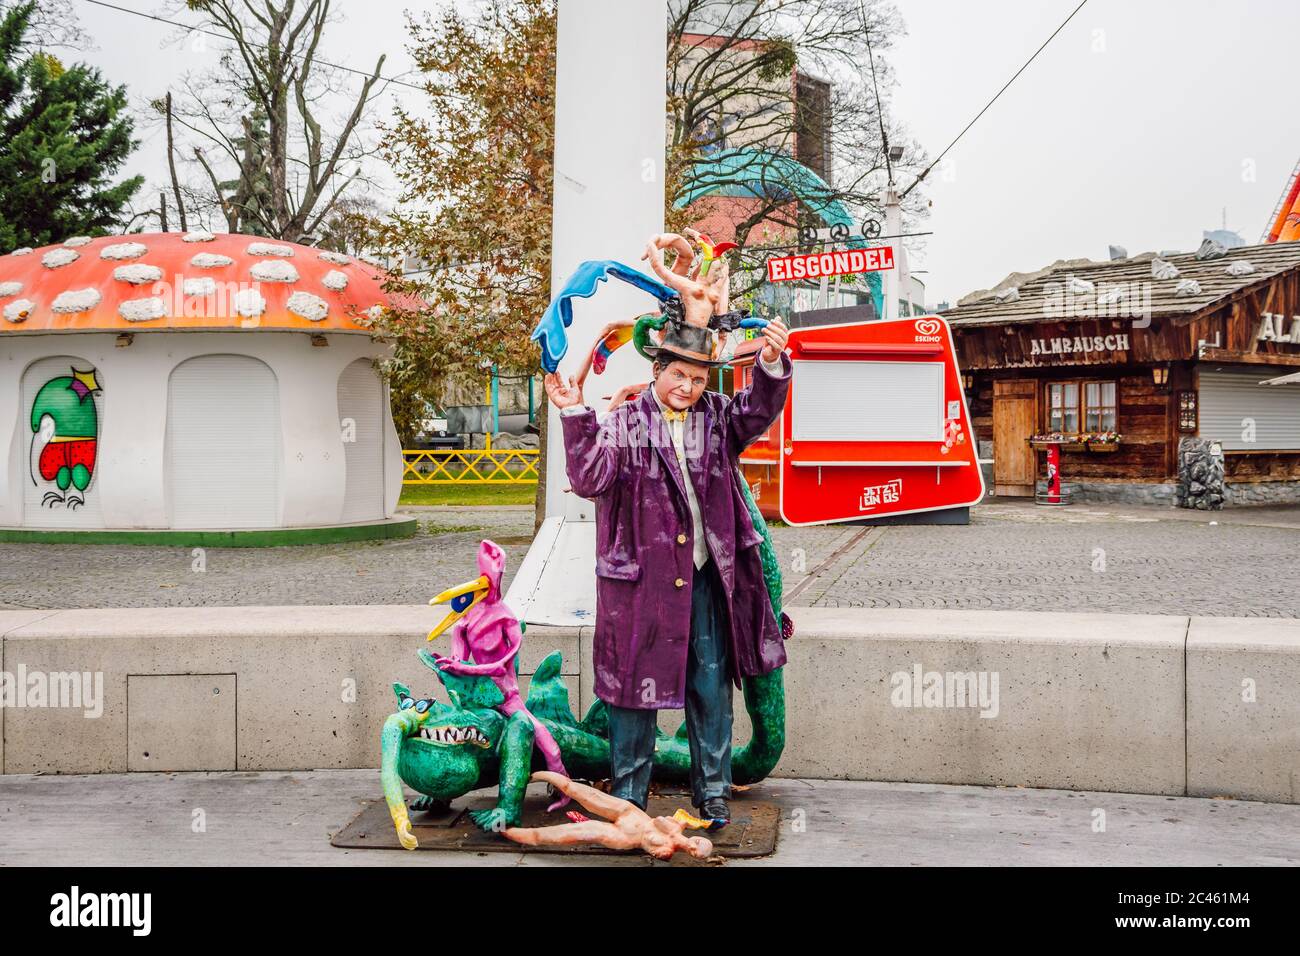 Une sculpture colorée psychédélique au parc d'attractions Prater Vienna. Personnages destinés à amuser les visiteurs de Prater. Banque D'Images